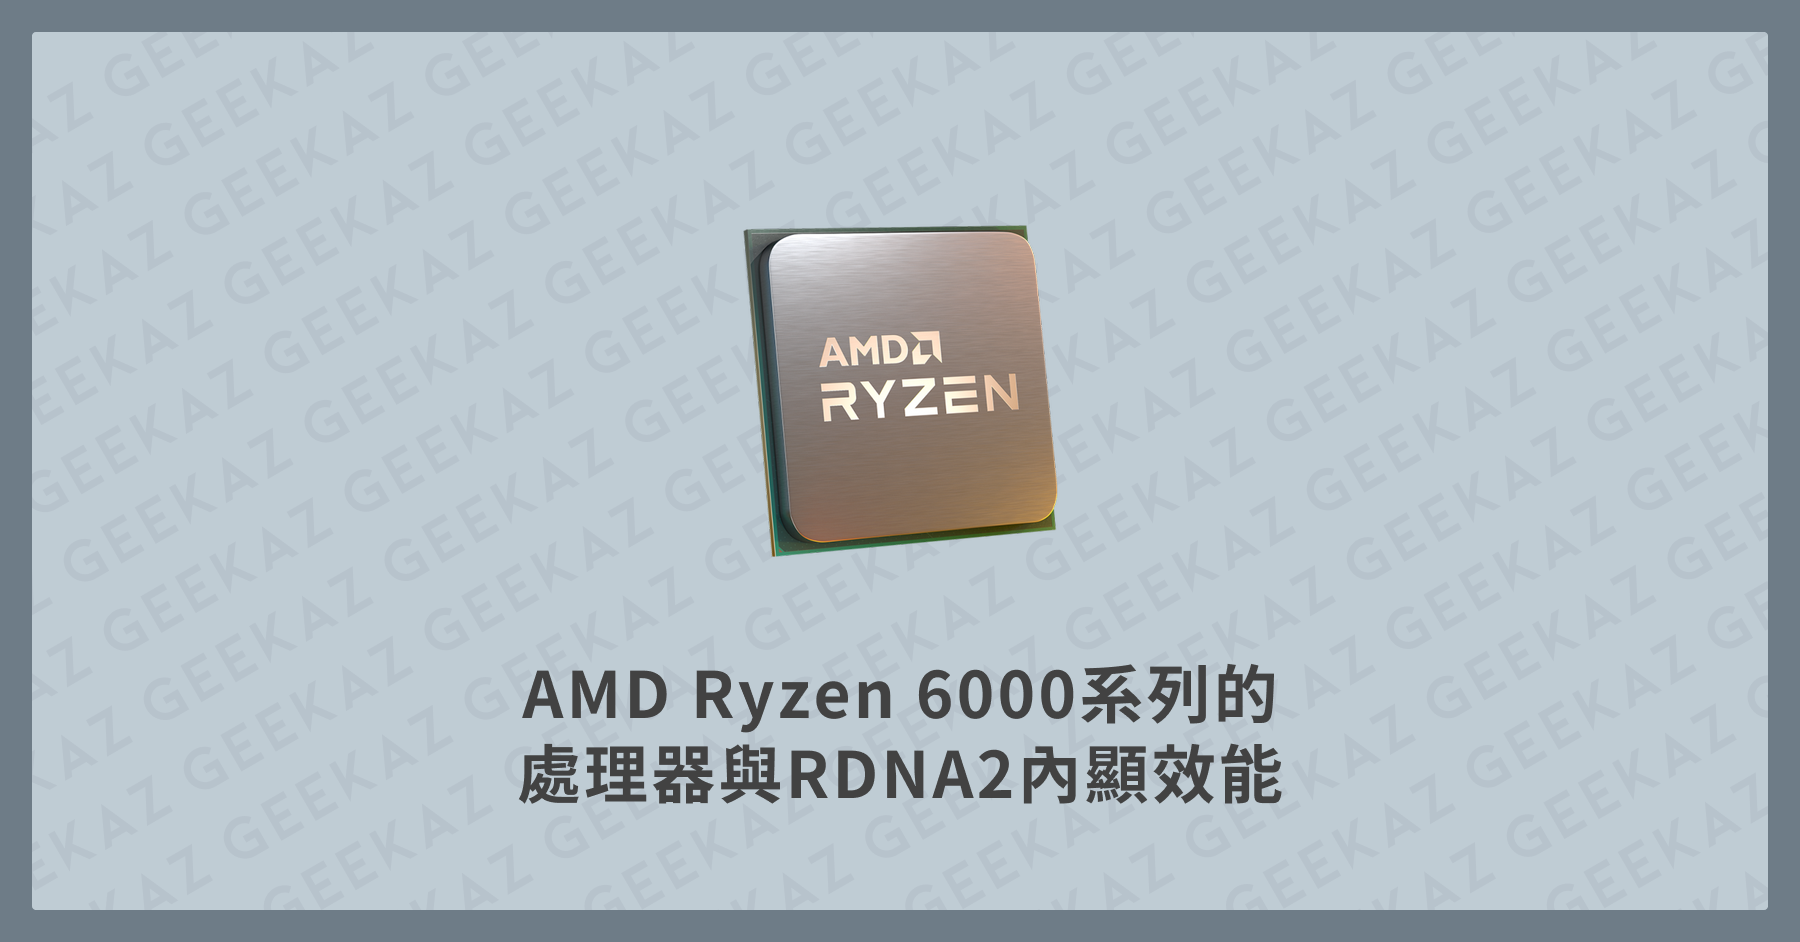 AMD Ryzen 6000系列